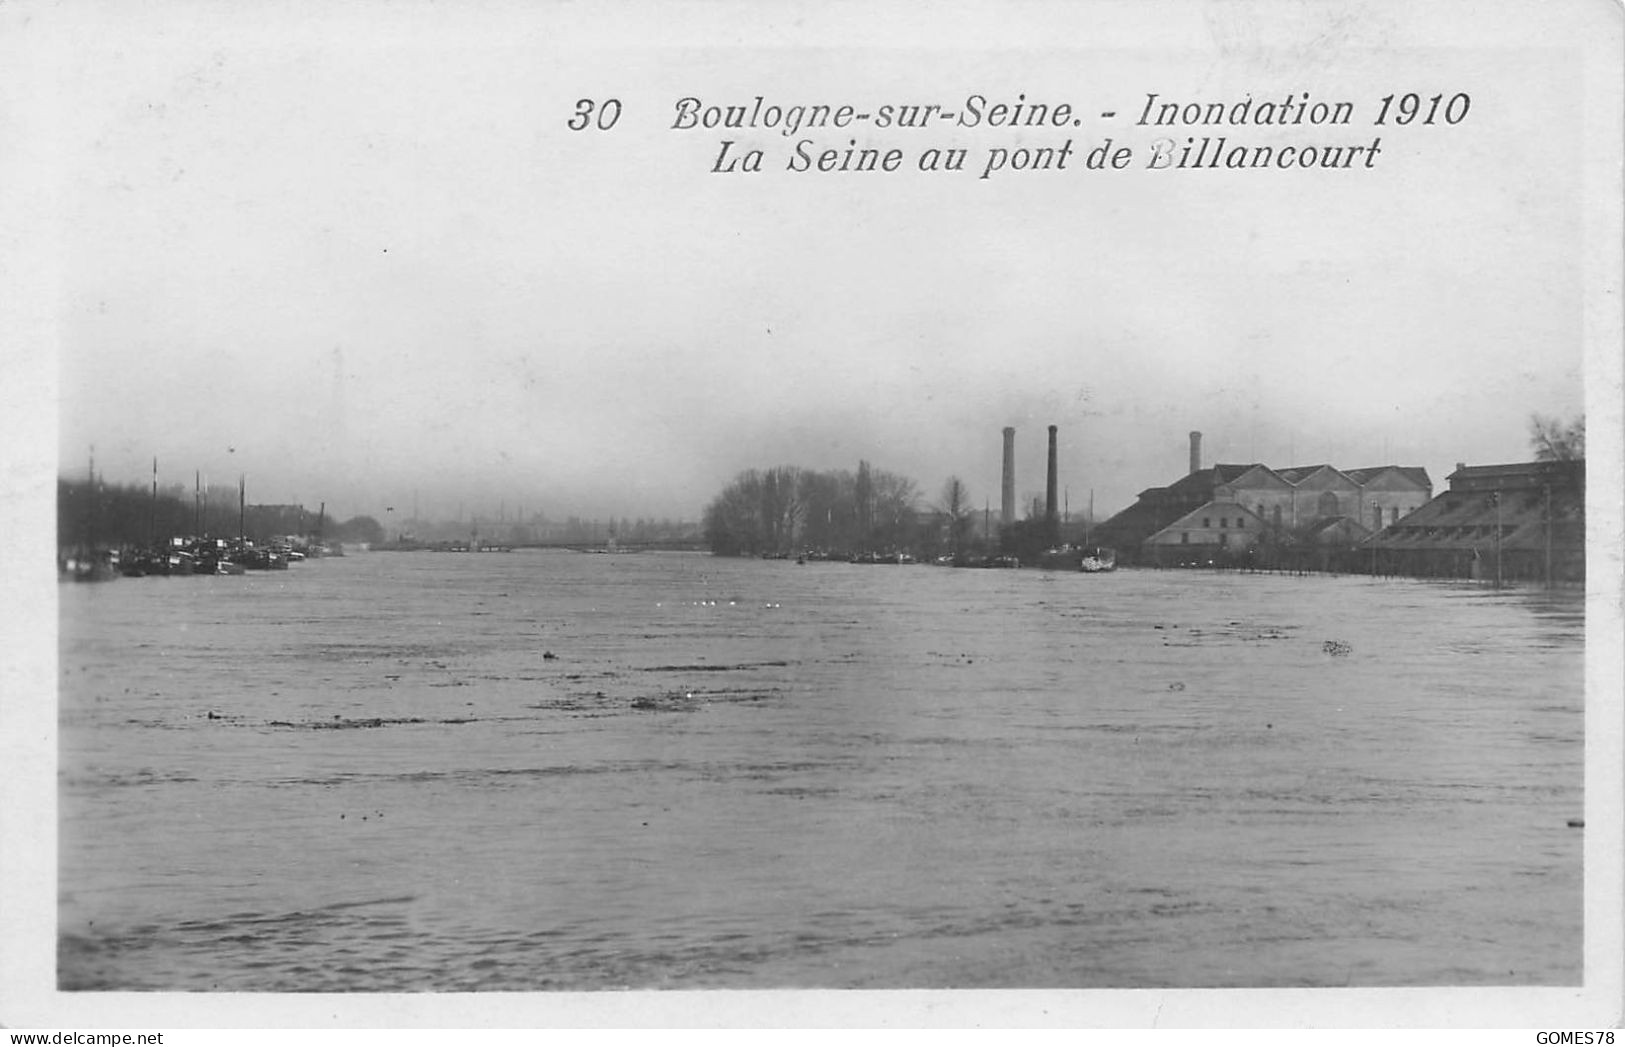 P1-92BOULOGNE-SUR-SEINE INONDATION 1910 LA SEINE AU PONT DE BILLANCOURT - Boulogne Billancourt